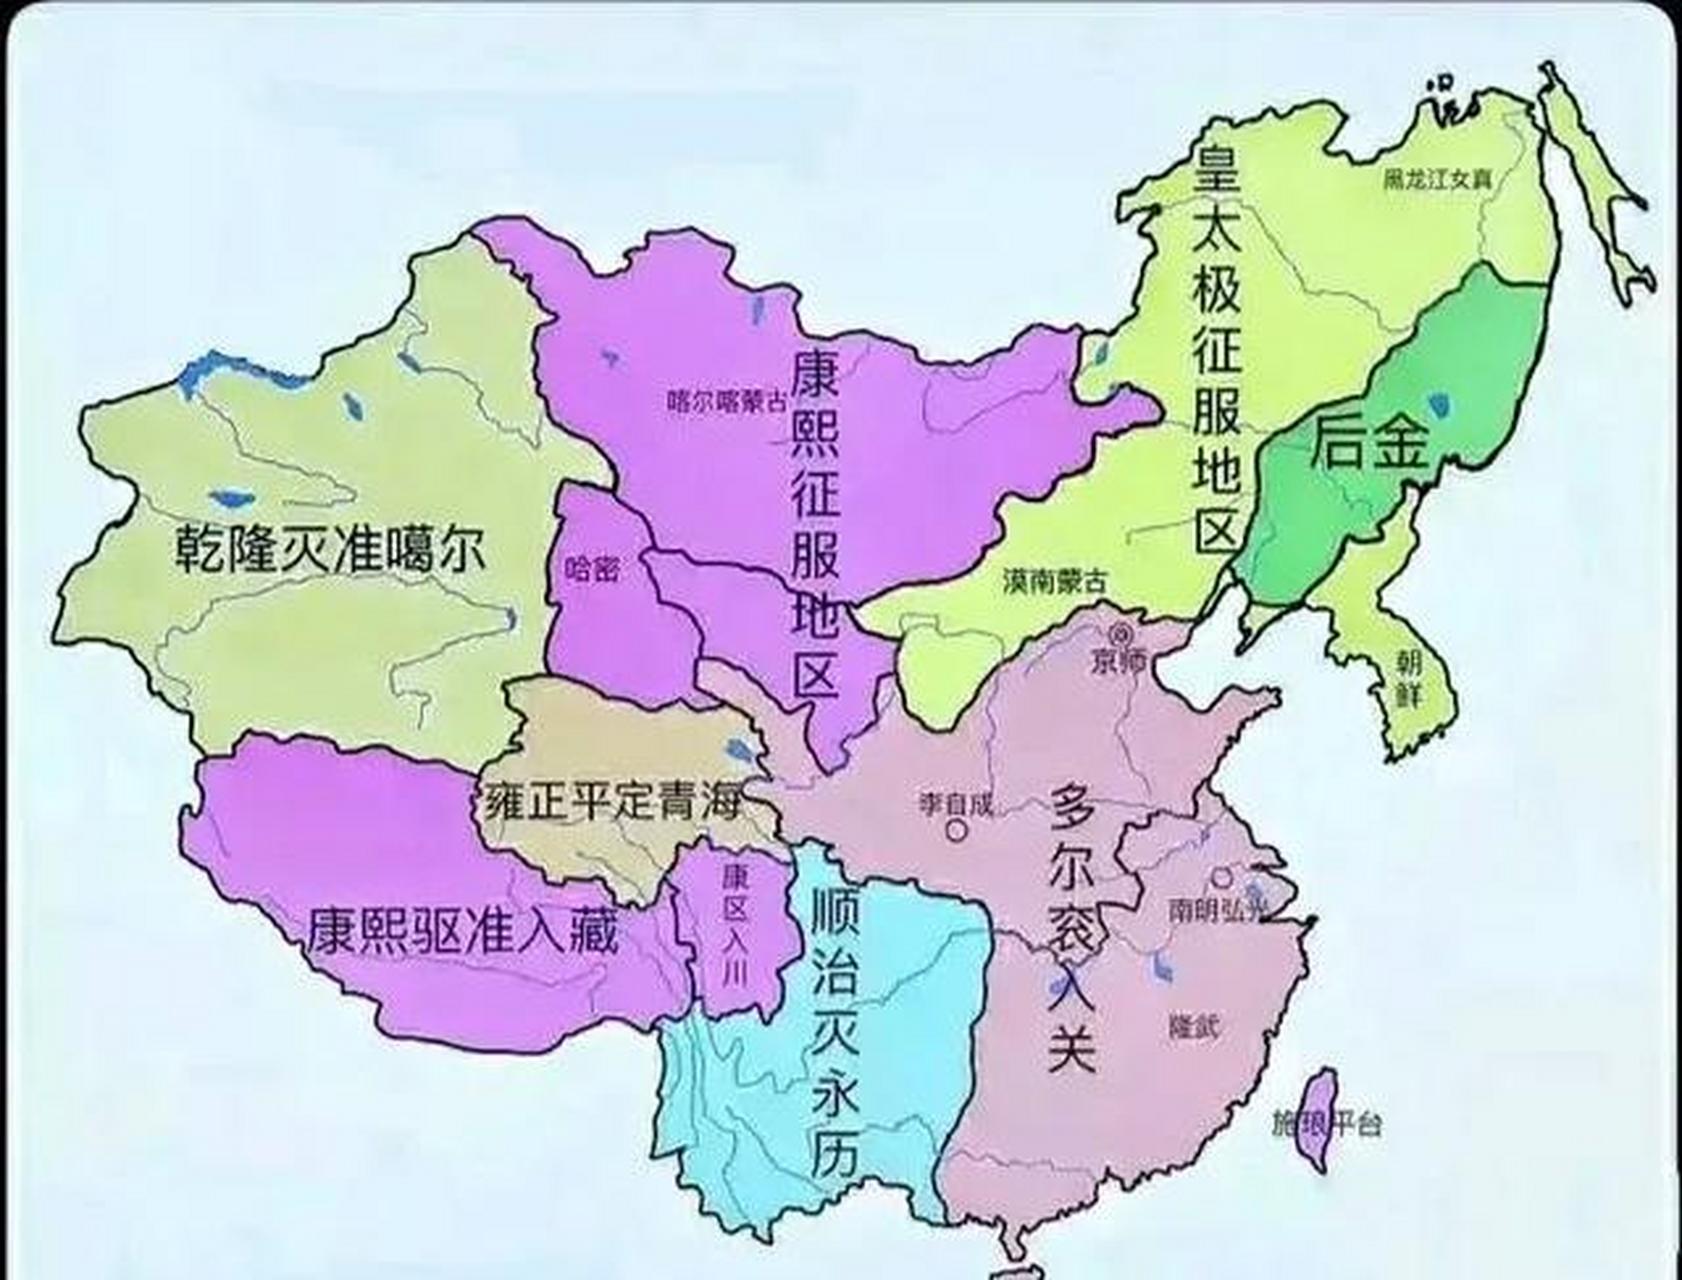 清朝开拓疆域图  历史上,清朝版图面积仅次于元朝,巅峰时期国土面积